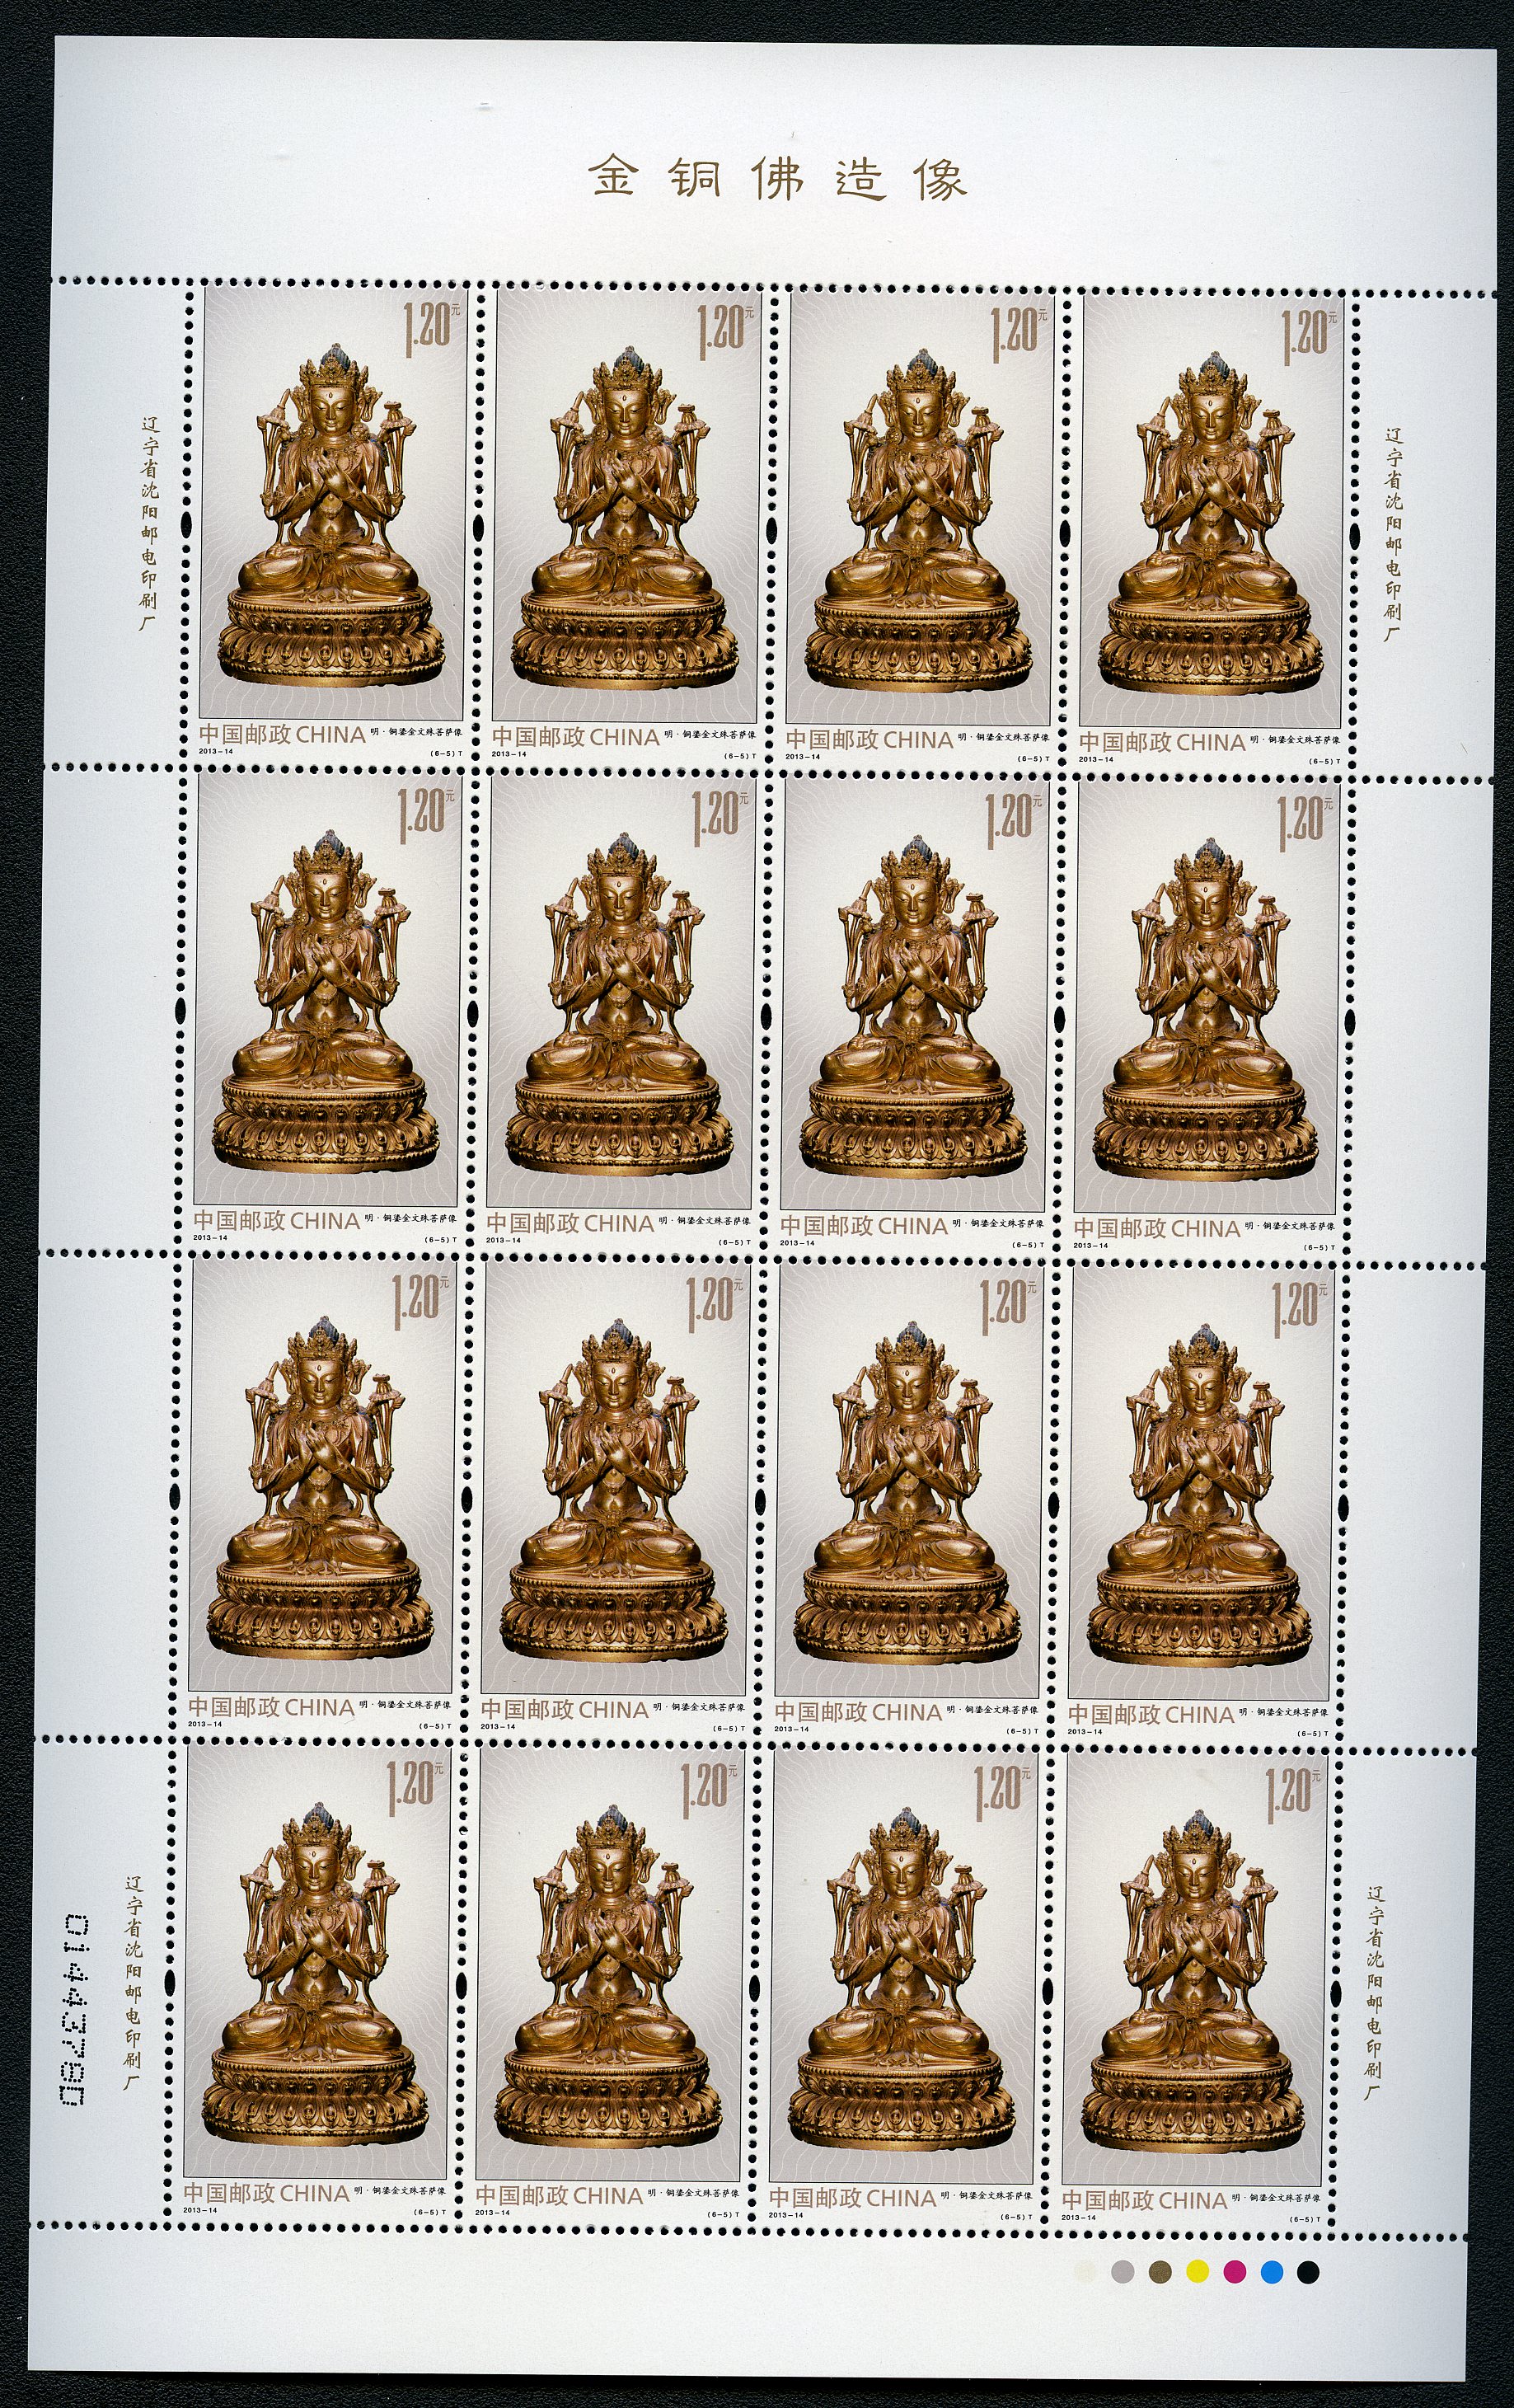 铜邮票(有一棵树的铜邮票)